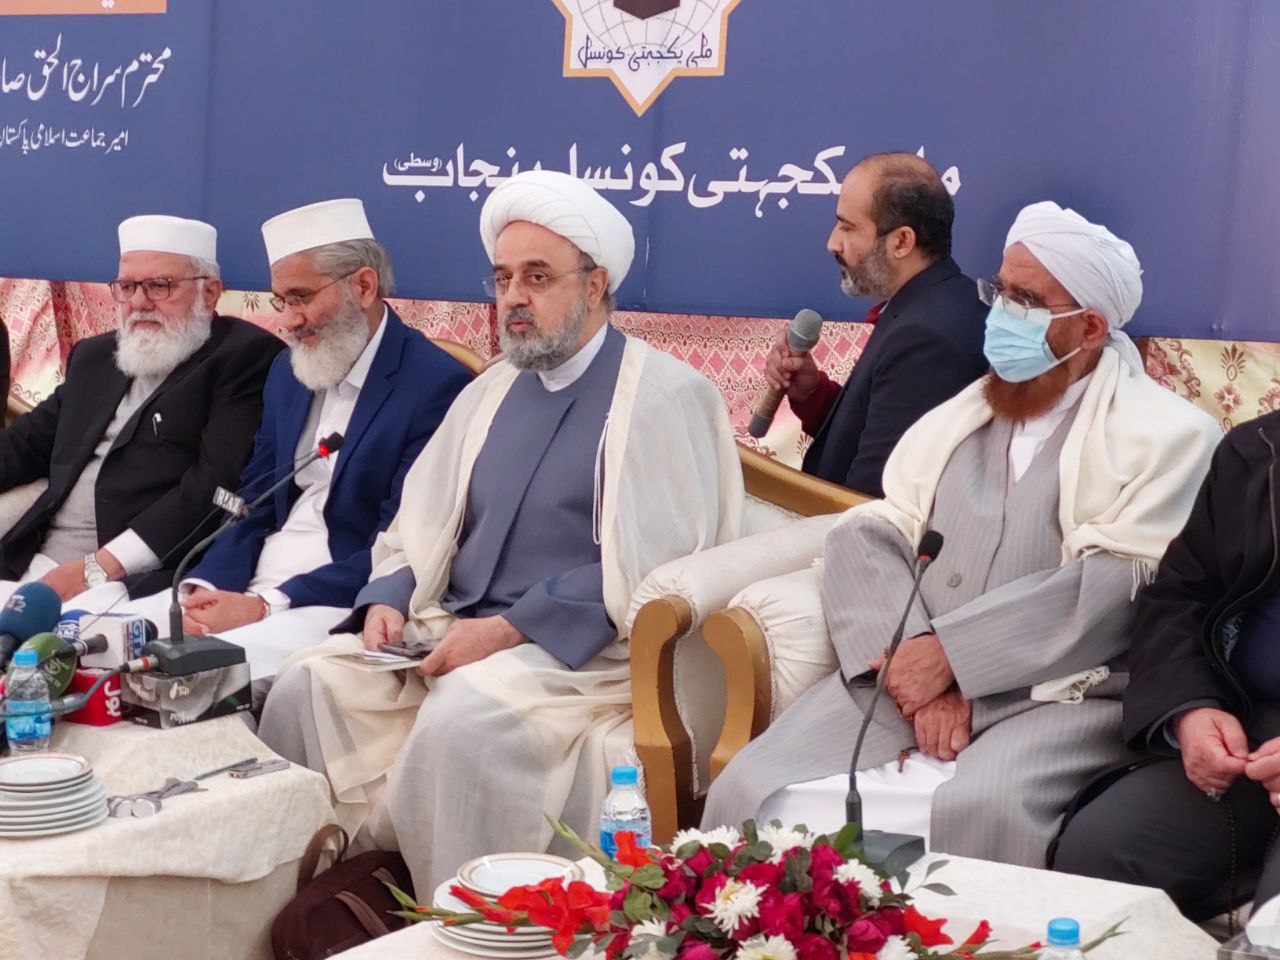 برپایی نشست در دارالعلوم منصوره پاکستان با حضور دبیرکل مجمع تقریب